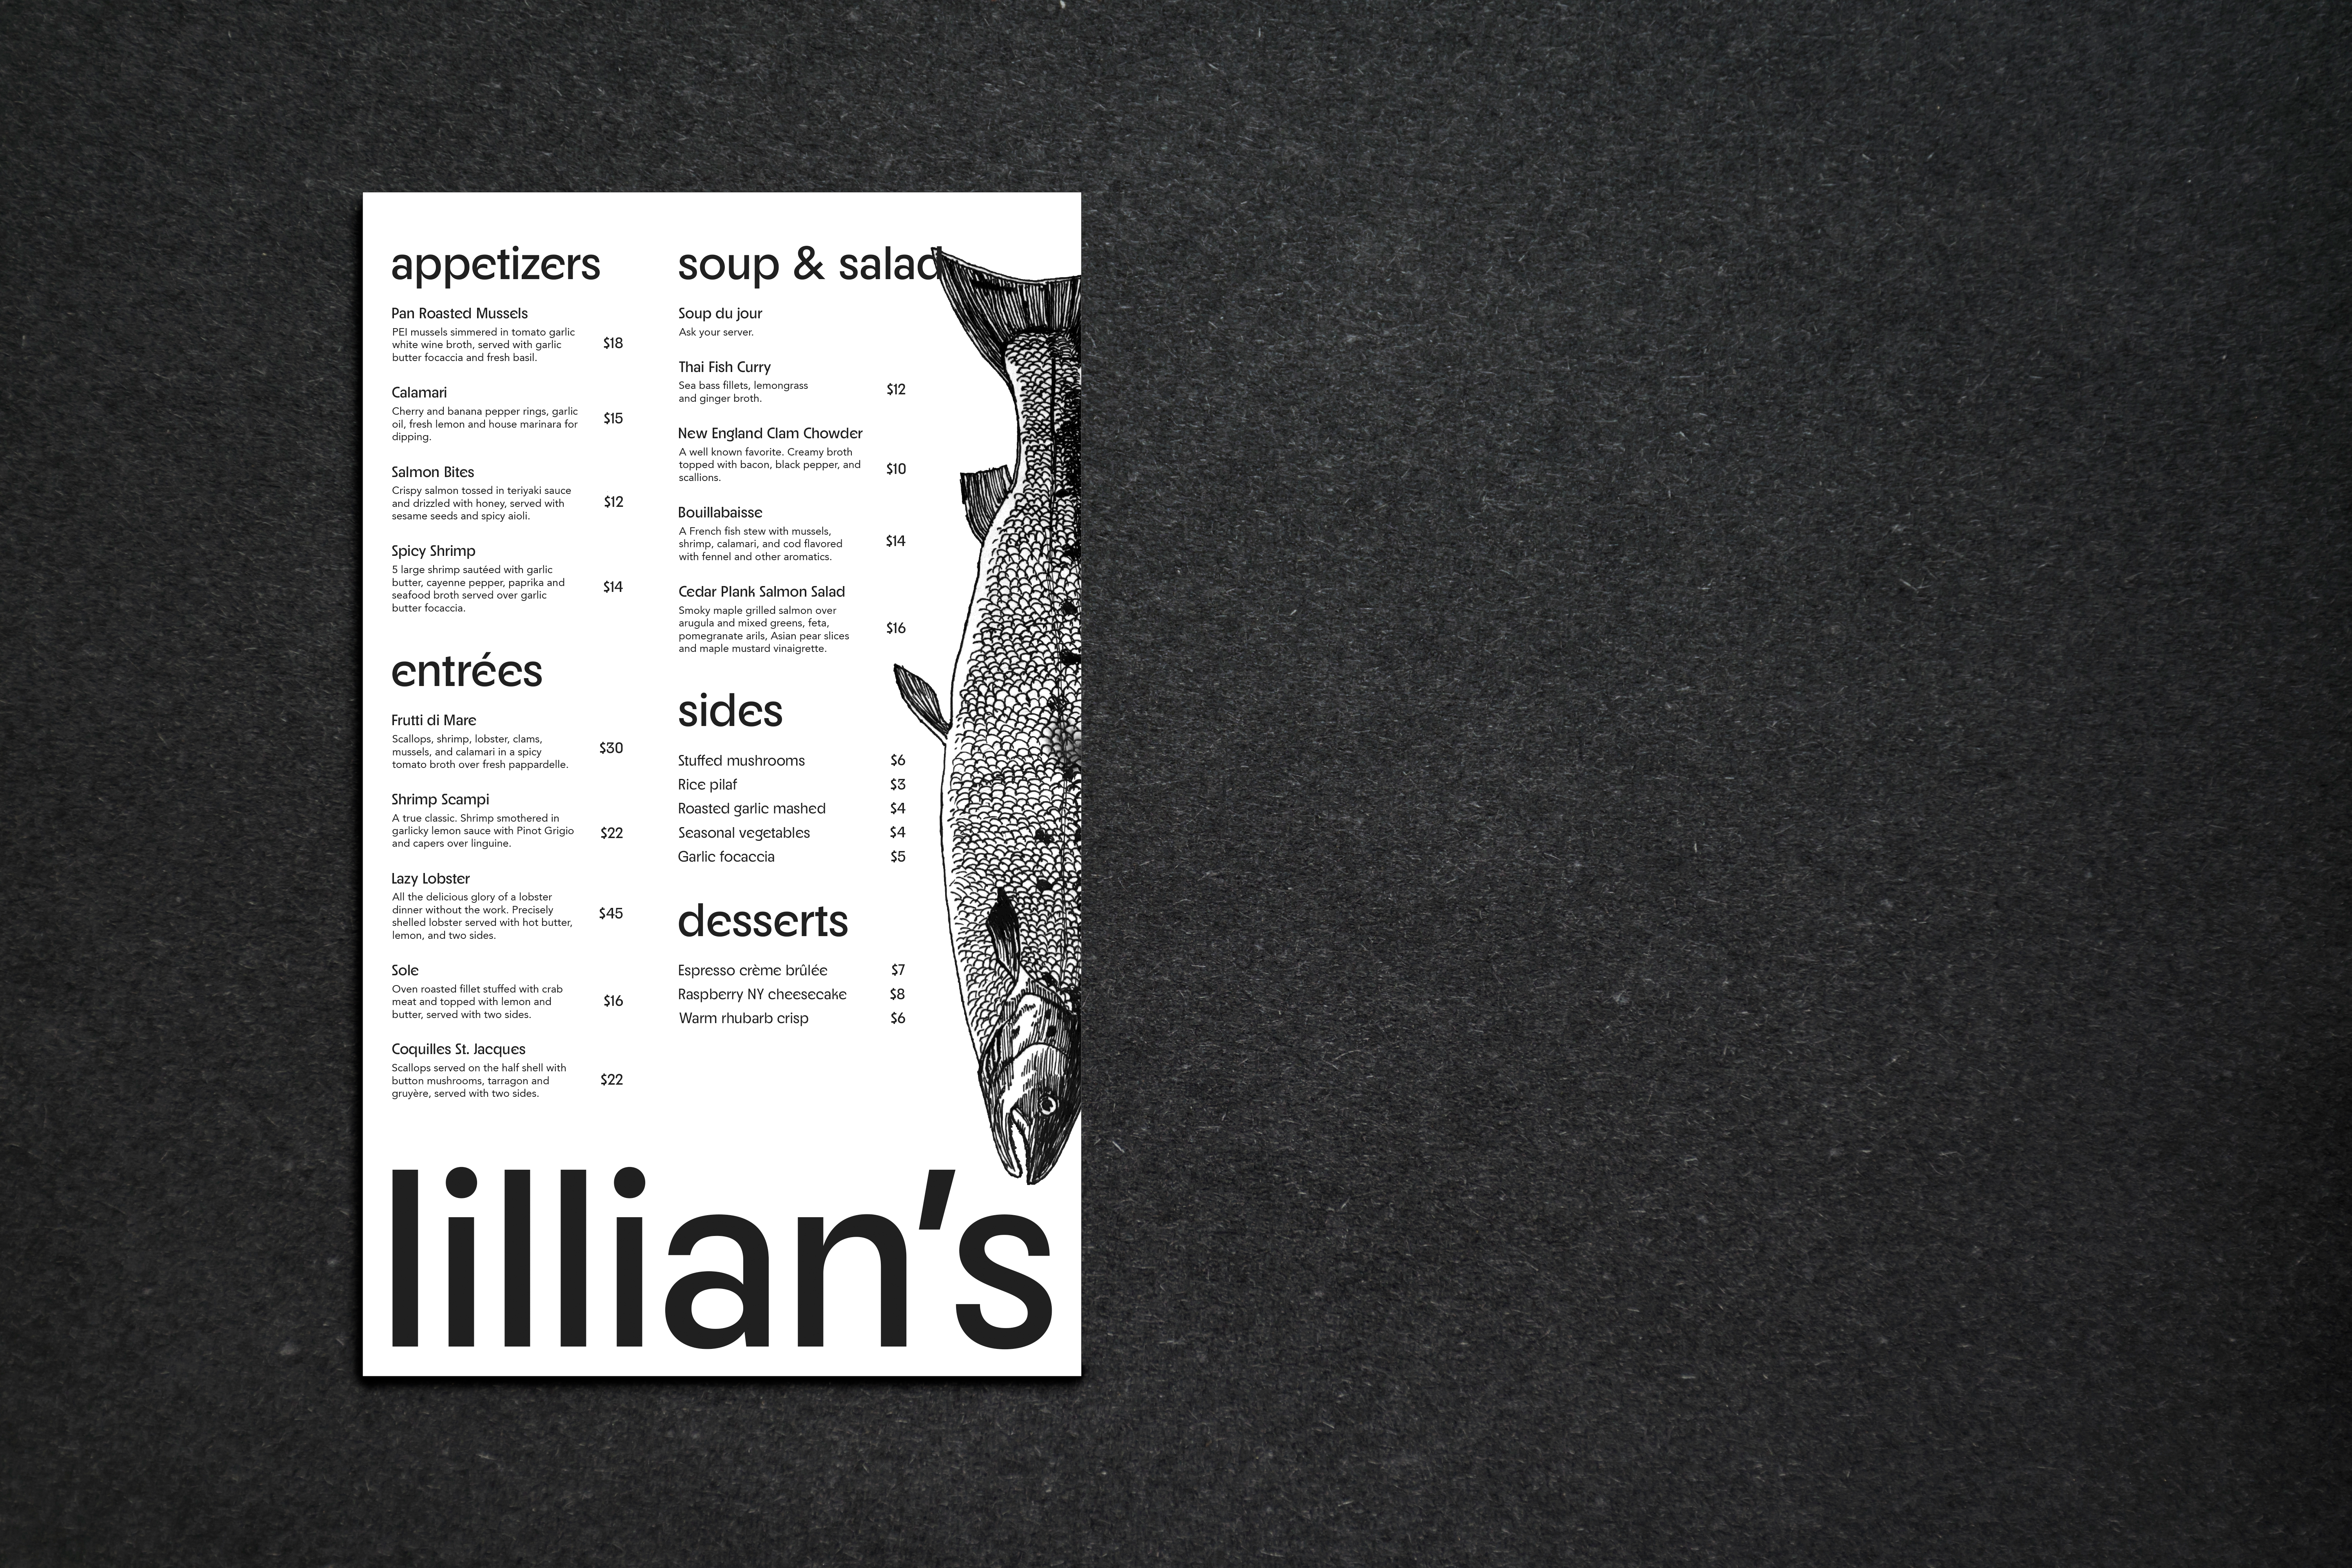 lillian's menu